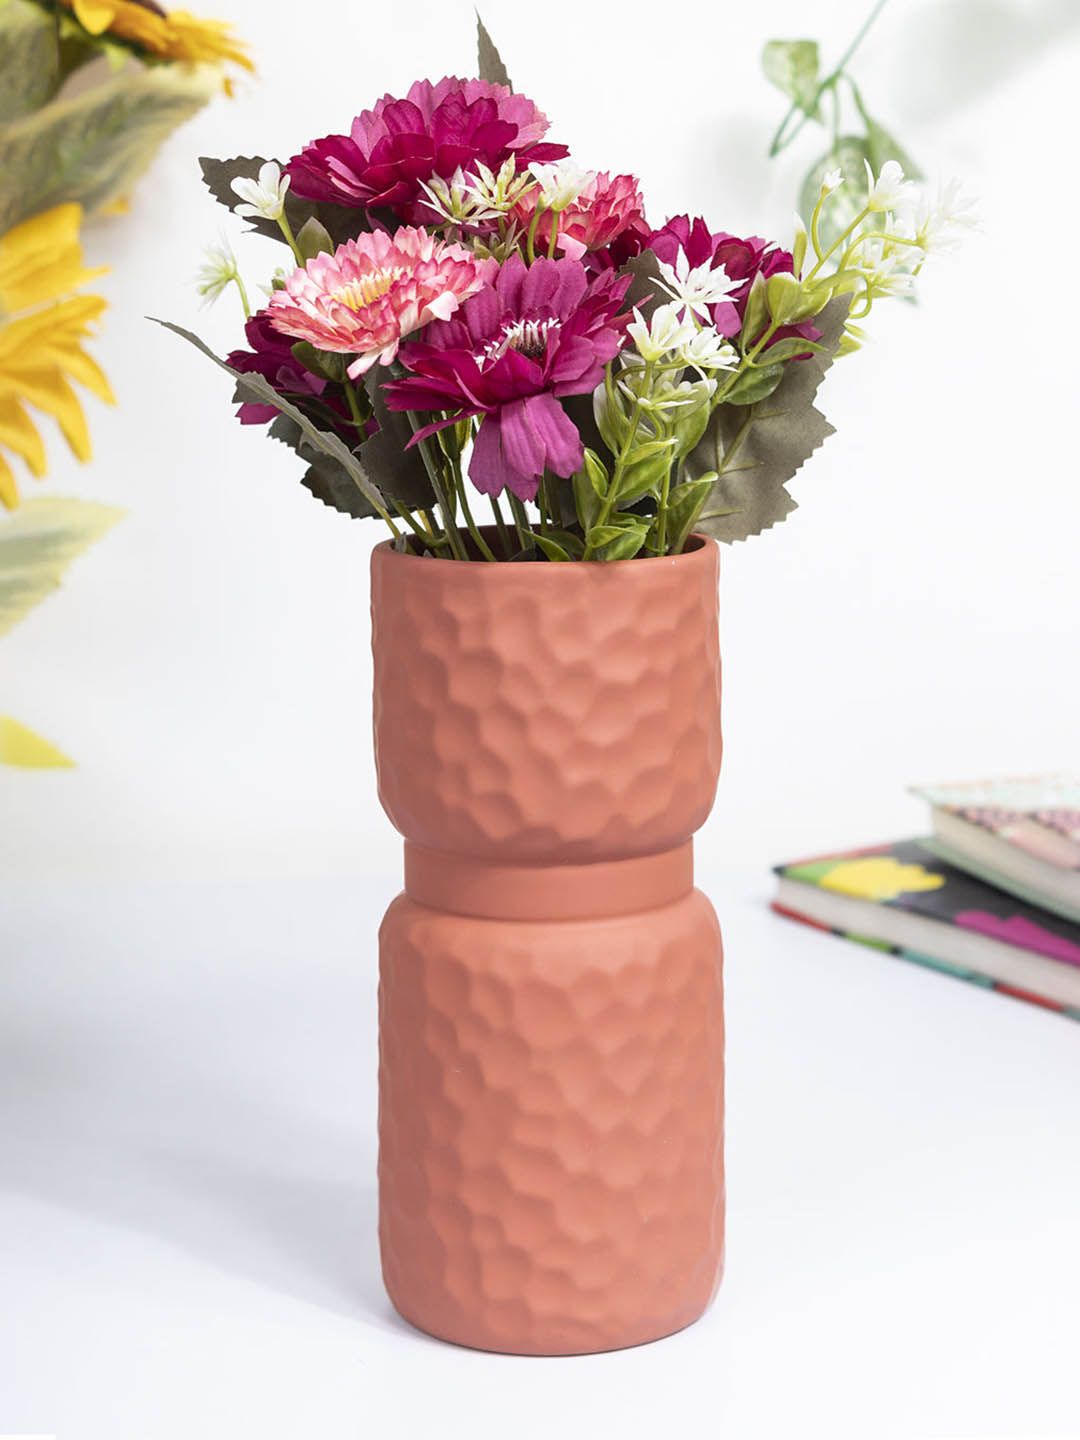 MARKET99 Rust Textured Ceramic Flower Vase Price in India